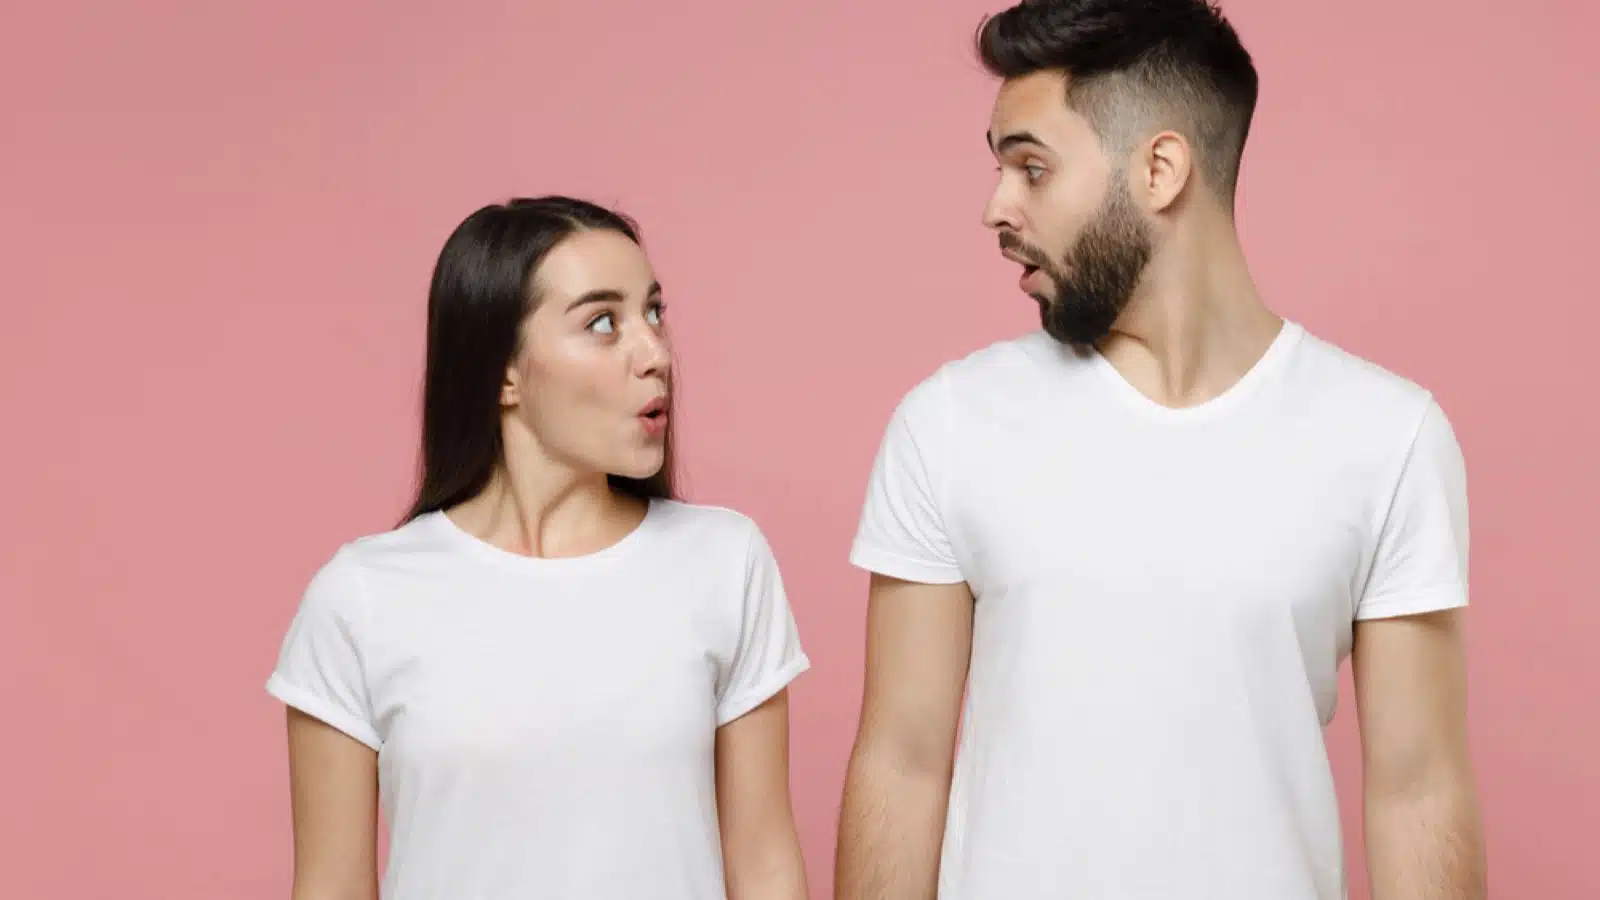 Couples wearing same type of Tee shirt shocked